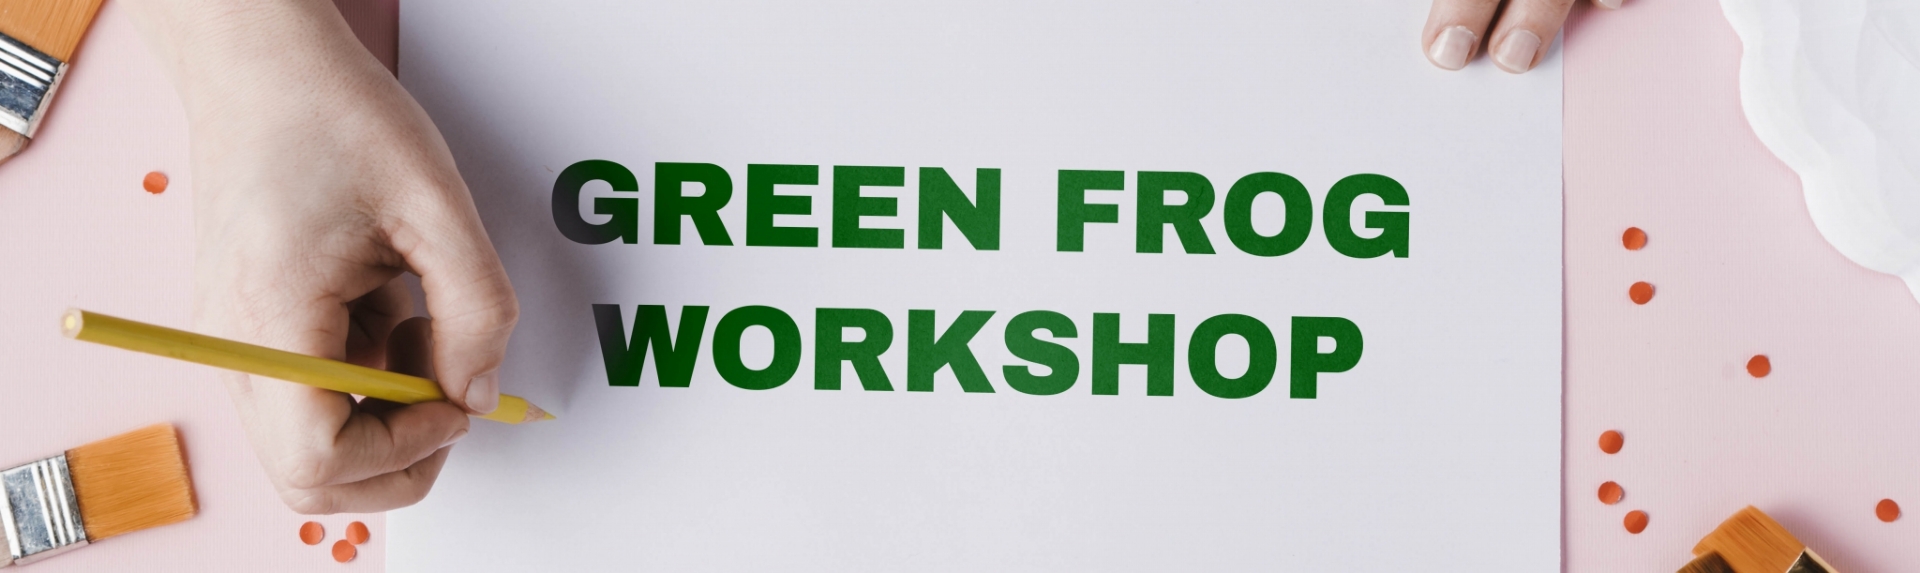 green frog workshop banner